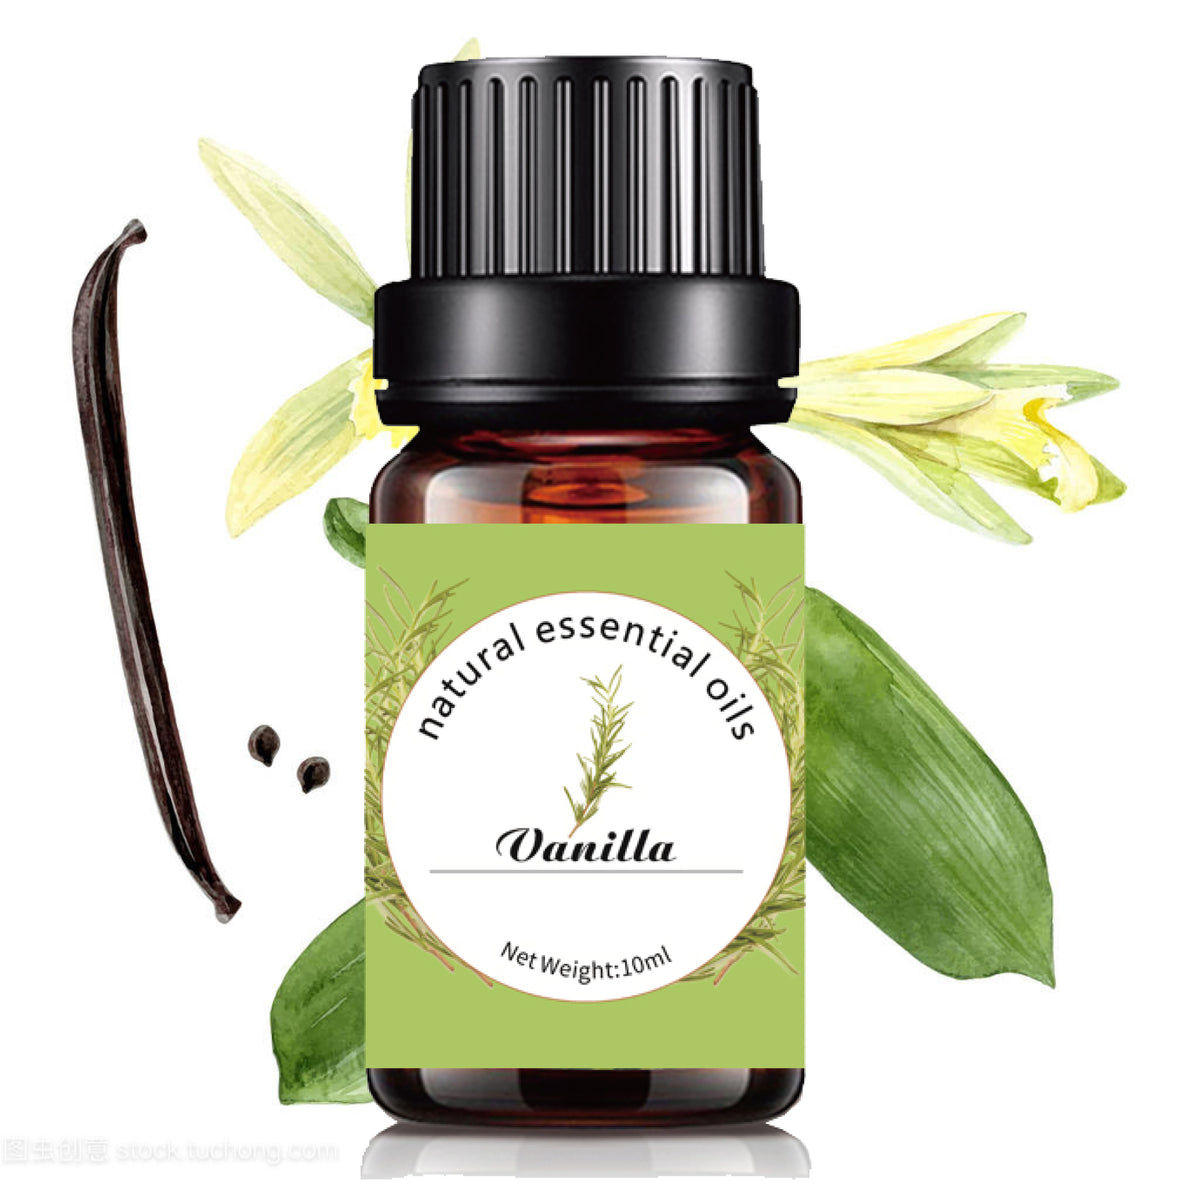 Vanilla - 10ml pure natural essential oil